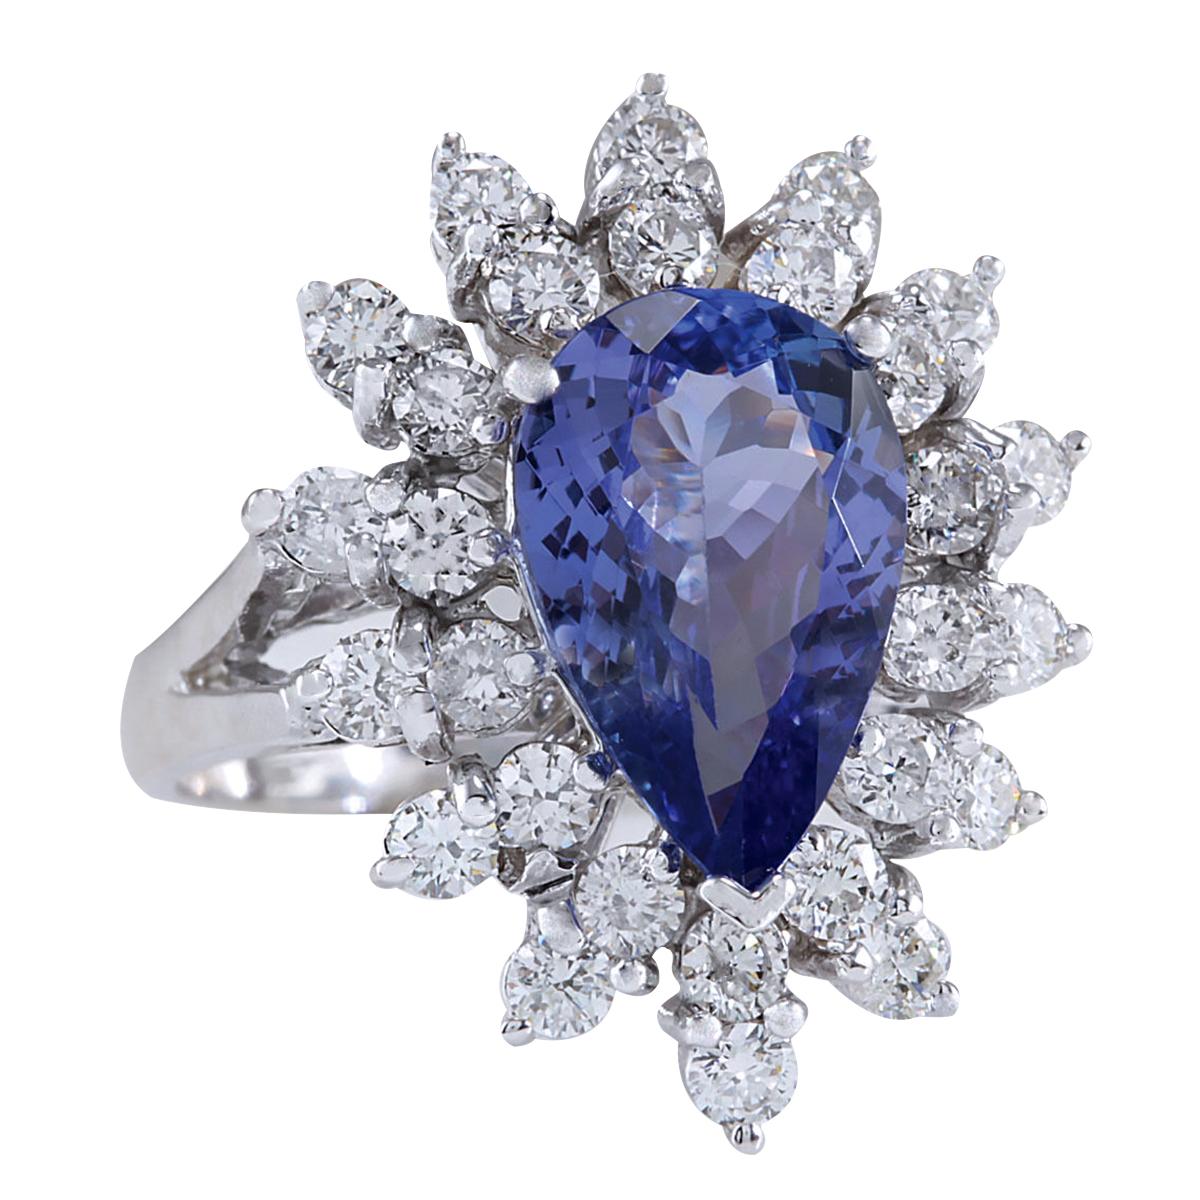 4.72 Carat Natural Tanzanite 14 Karat White Gold Diamond Ring
Stamped: 14K White Gold
Total Ring Weight: 7.0 Grams
Total Natural Tanzanite Weight is 3.32 Carat (Measures: 13.90x8.50 mm)
Color: Blue
Total Natural Diamond Weight is 1.40 Carat
Color: